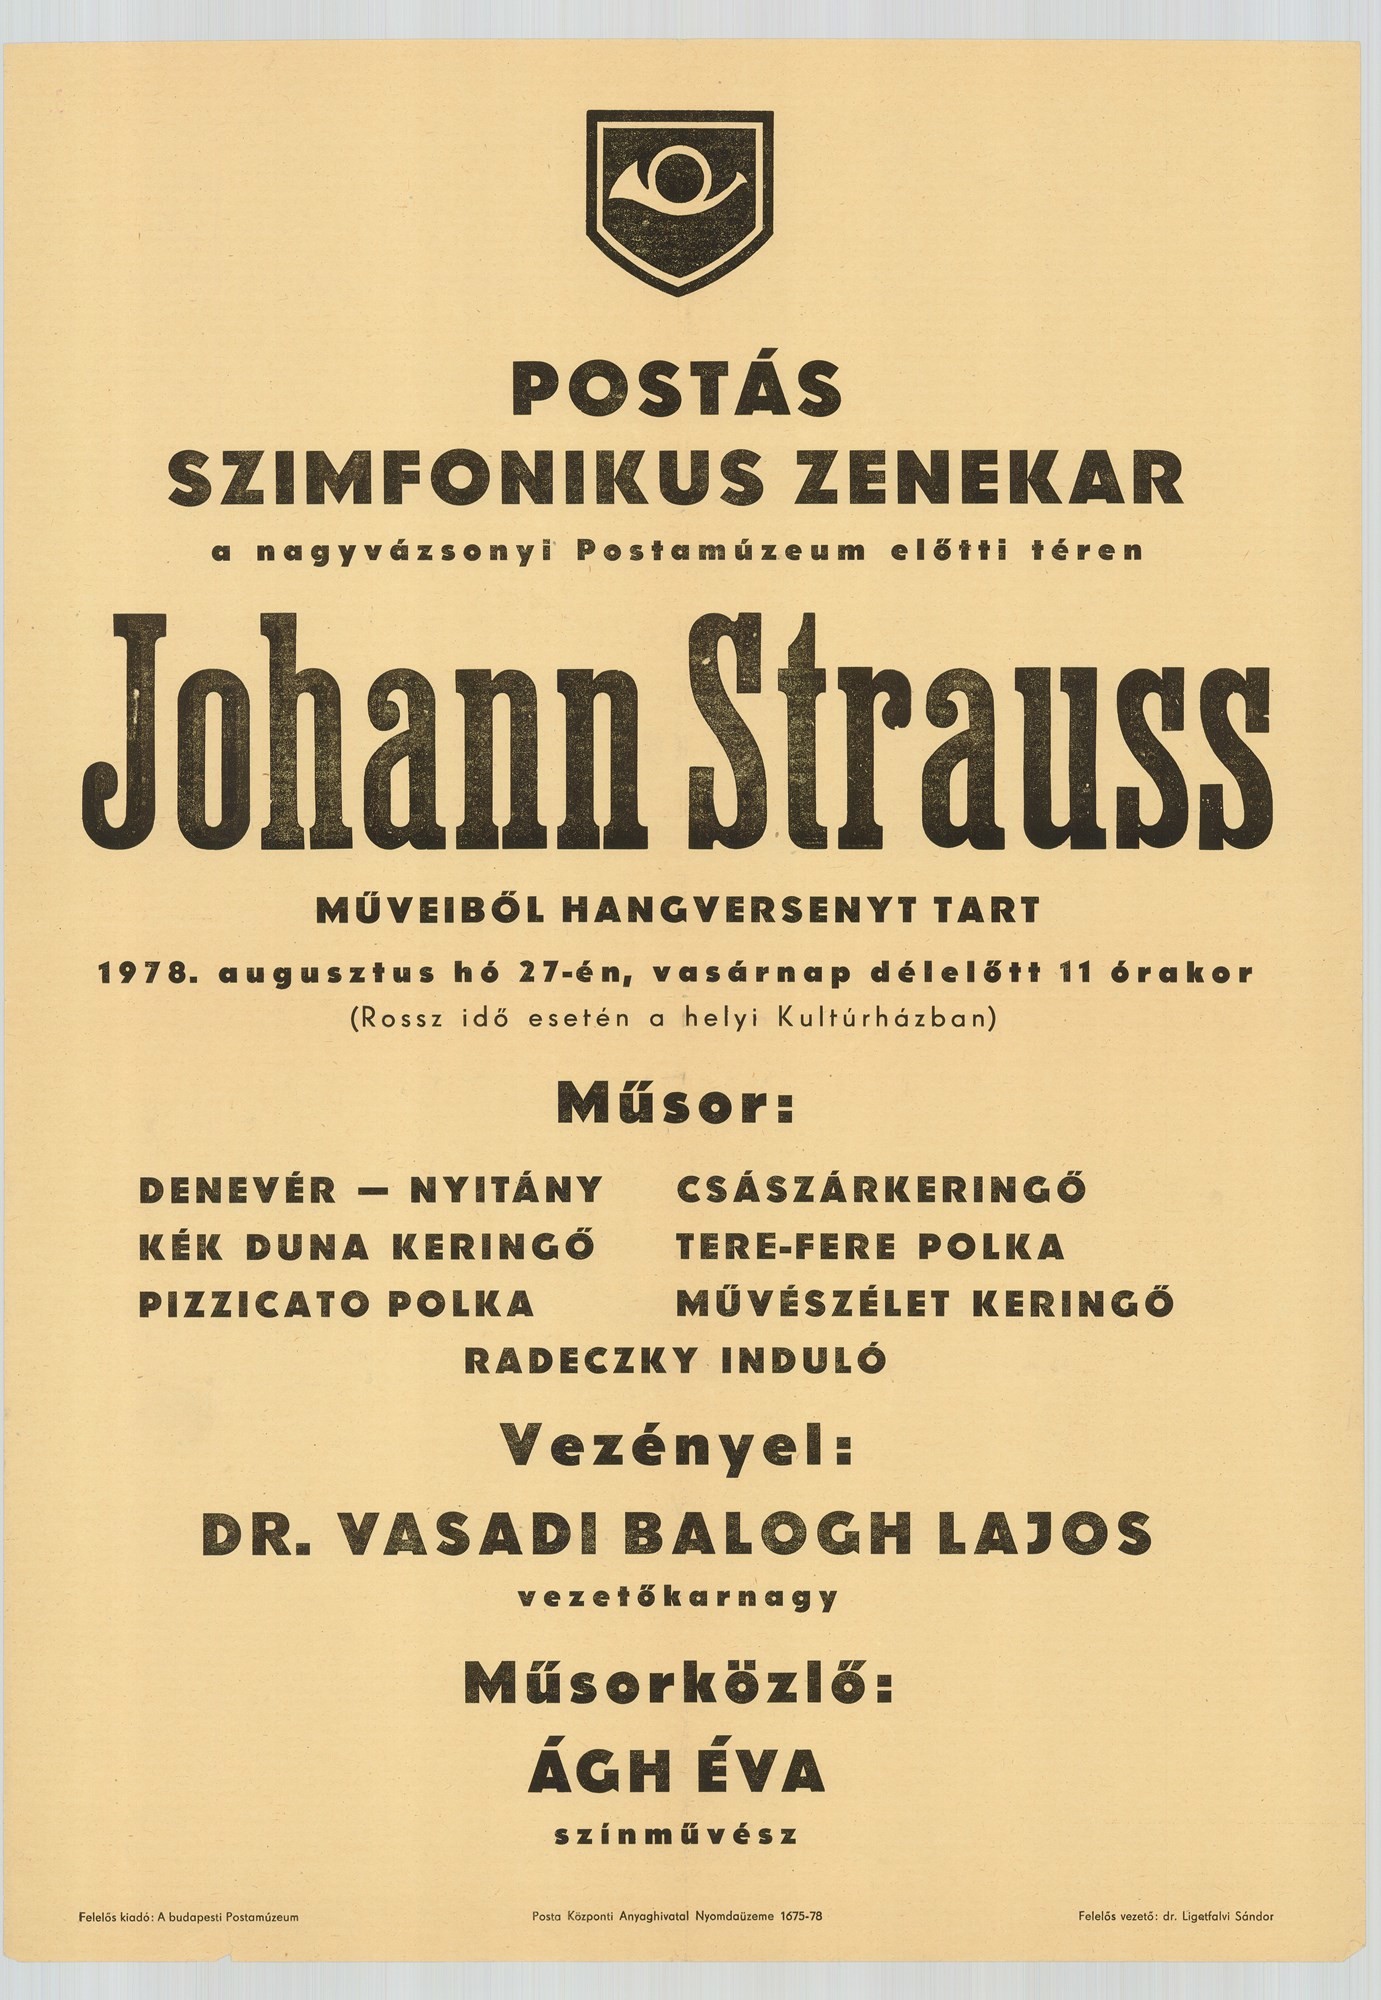 Plakát - Postás Szimfonikus Zenekar, 1978 (Postamúzeum CC BY-NC-SA)